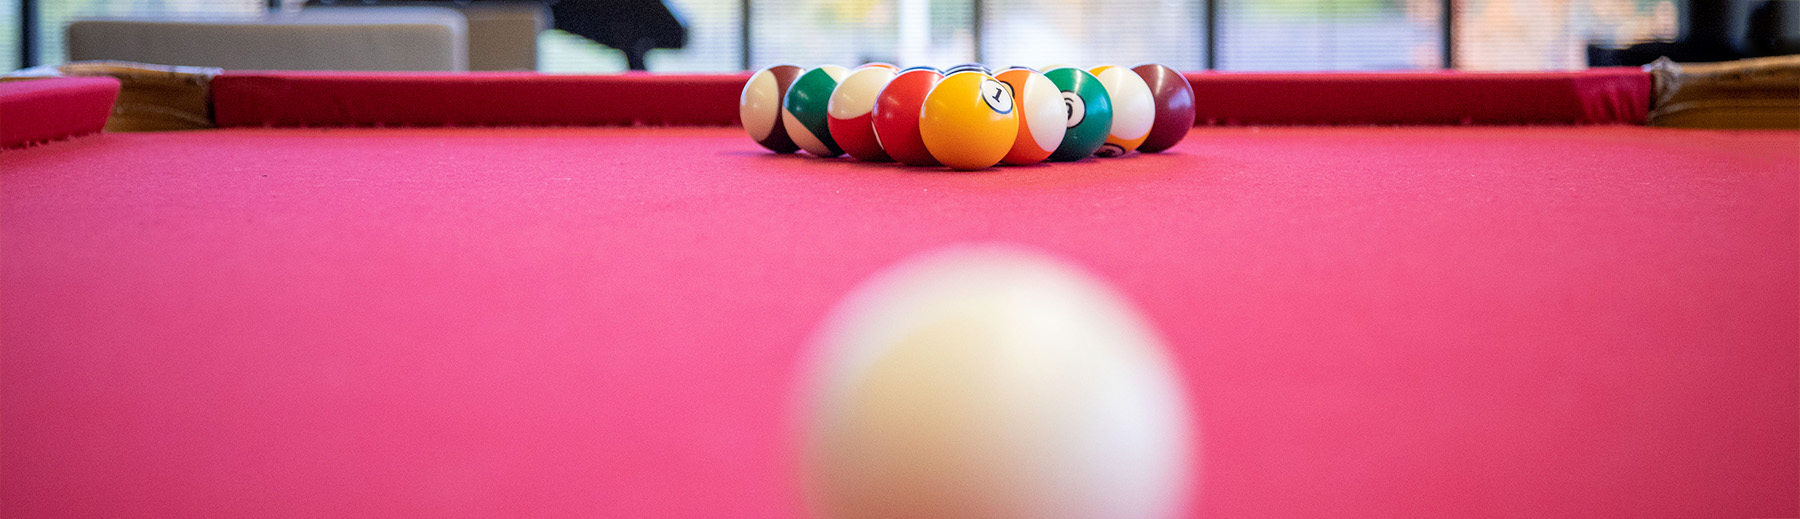 Billiard balls set up on a red billards table